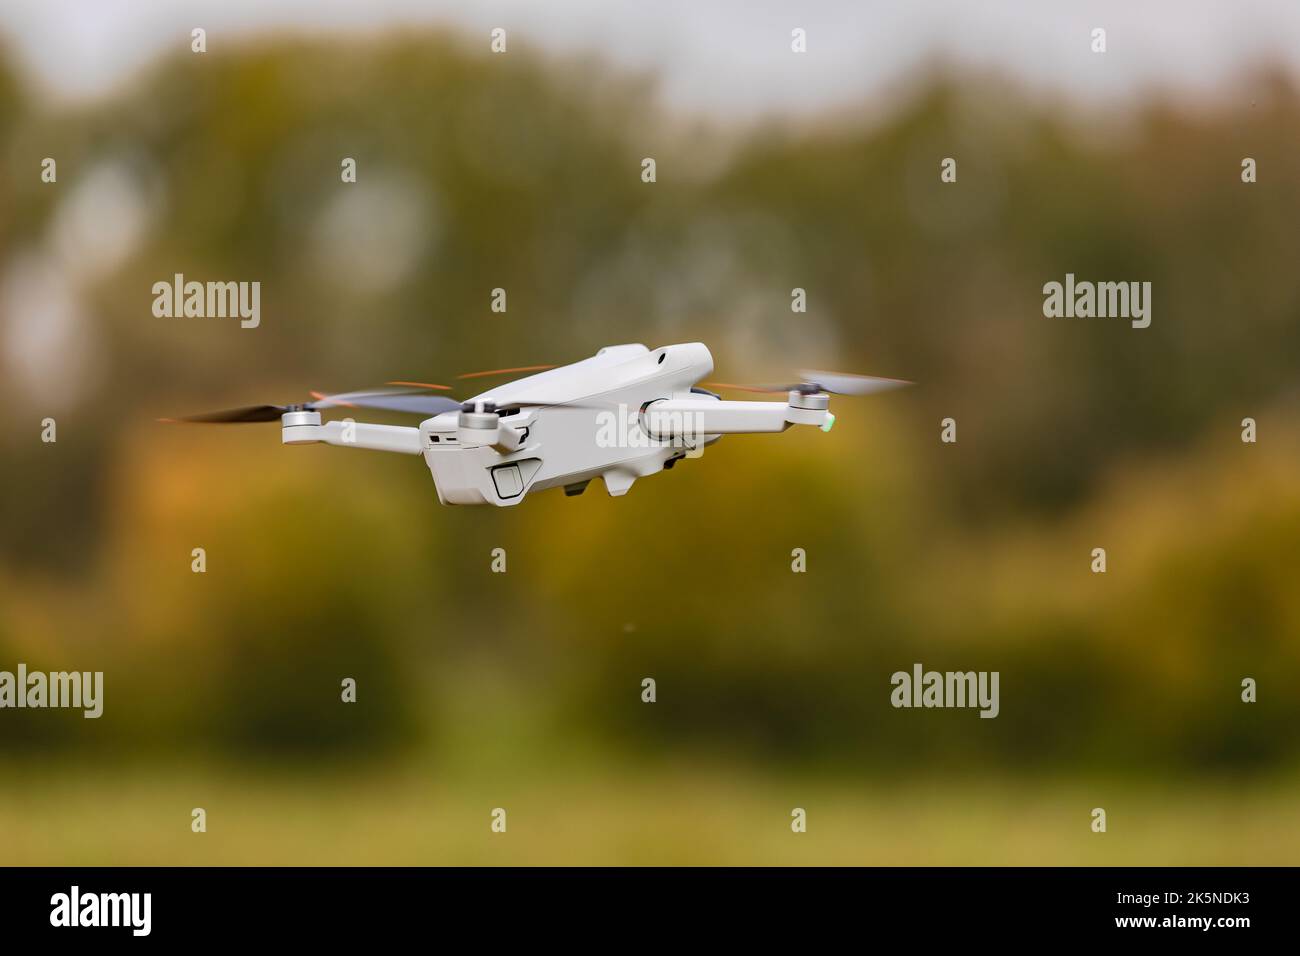 Una cámara voladora drone con rotores giratorios expuestos al aire libre como UAV Foto de stock